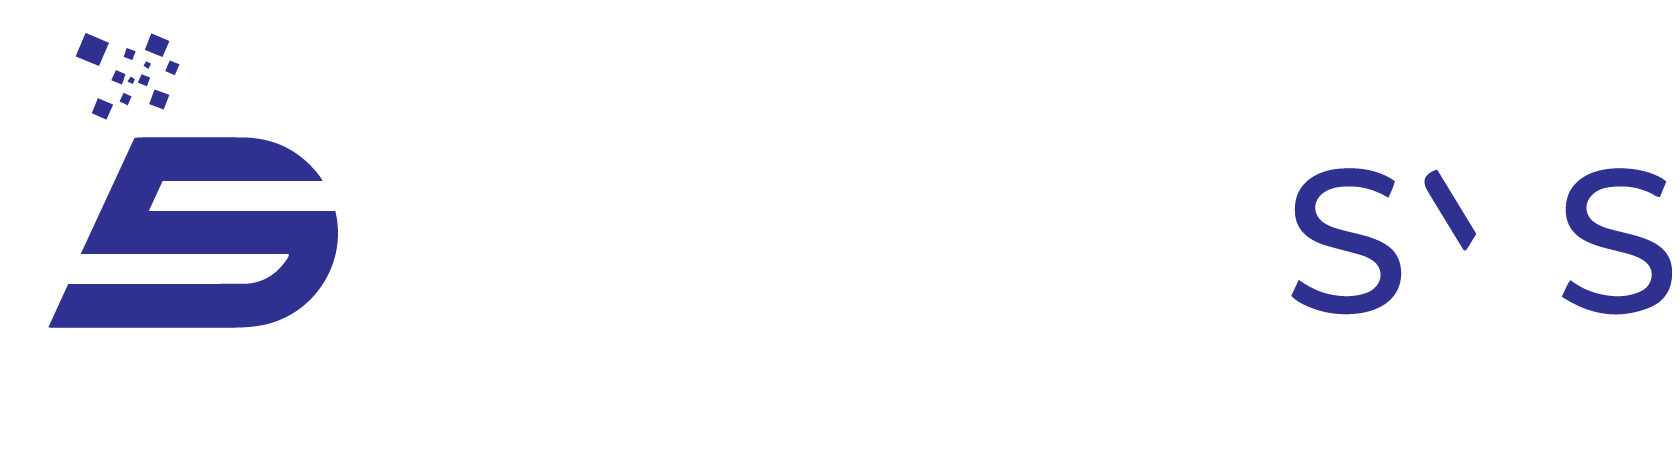 digitosys-logo-new-2-white